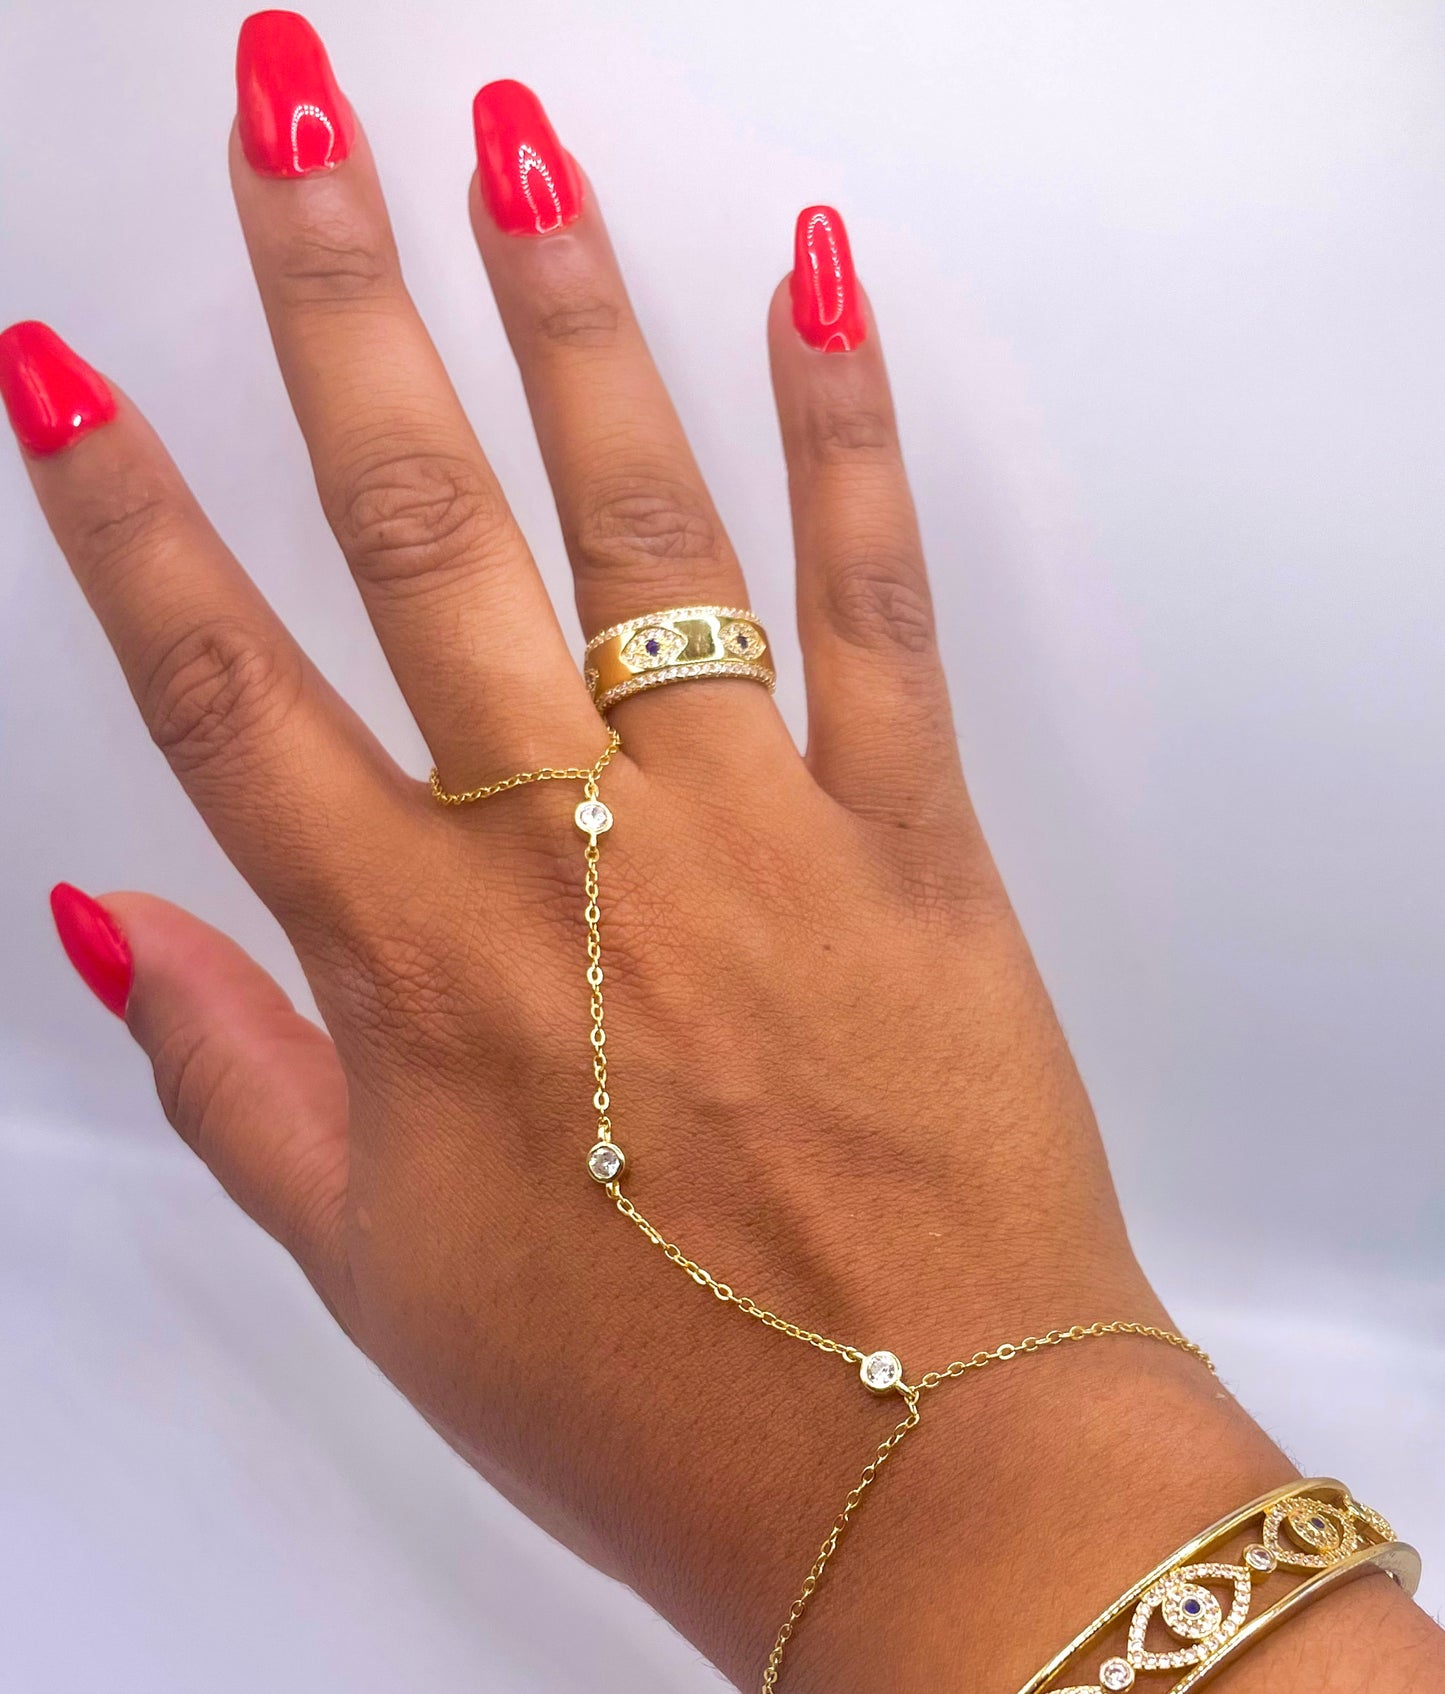 Yemaya Goddess hand chain